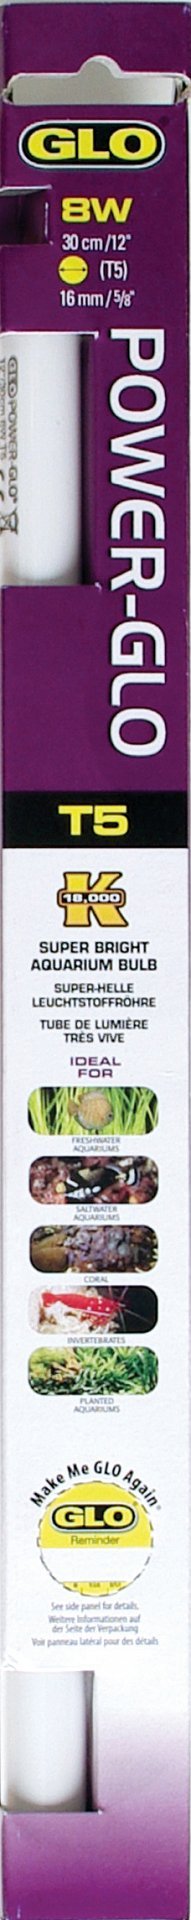 Флуоресцентная лампа POWER-GLO 40 Вт 105 см, Hagen от зоомагазина Дино Зоо